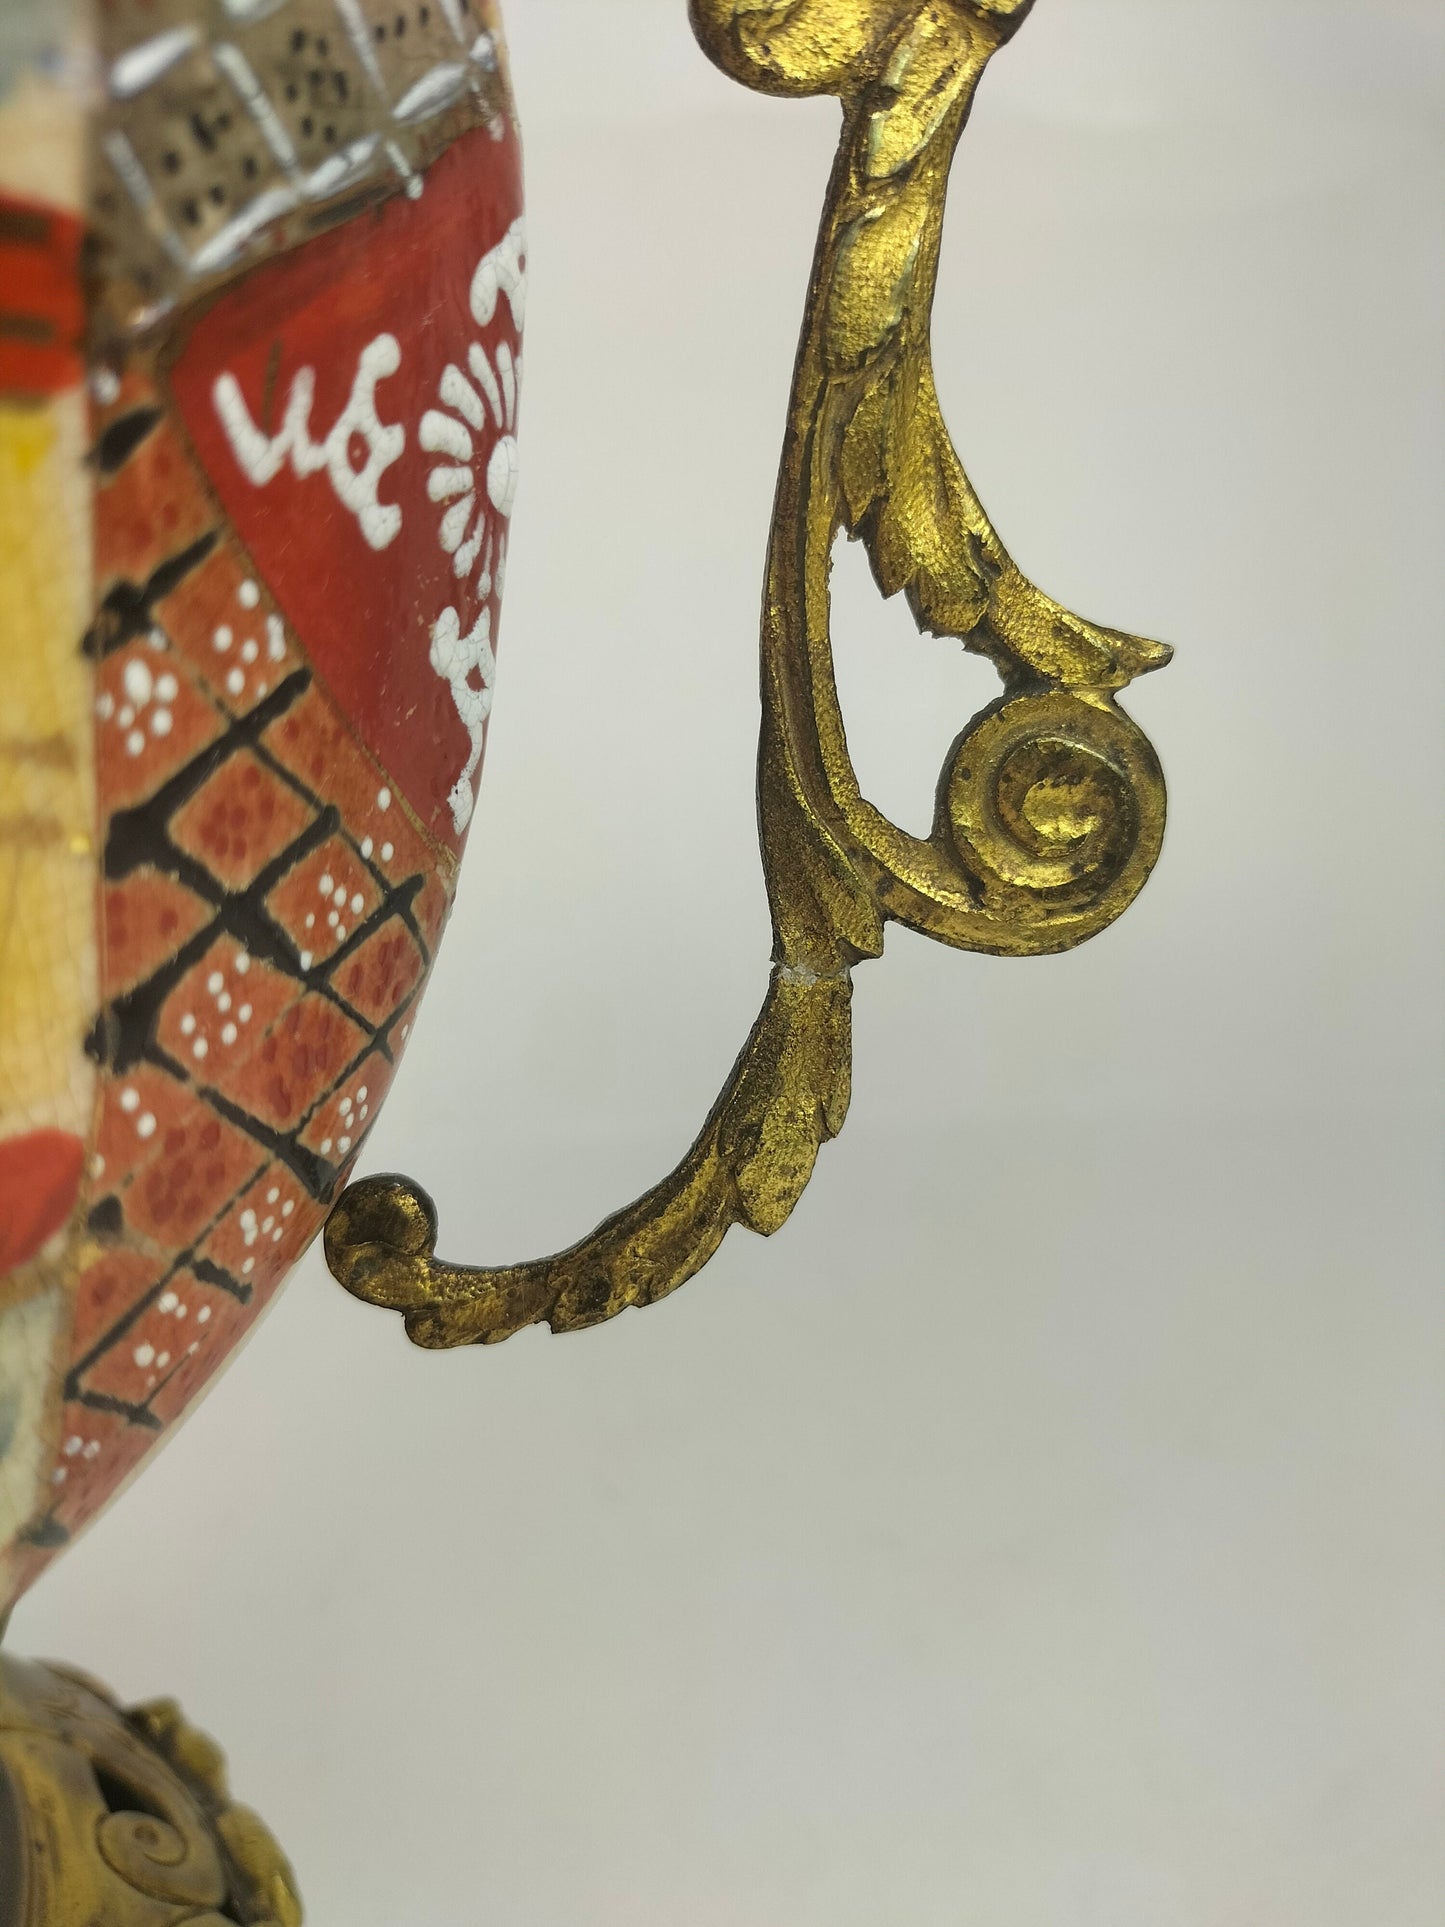 جرة ساتسوما يابانية عتيقة مزينة بالنحاس المطلي بالذهب // القرن التاسع عشر - فترة ميجي